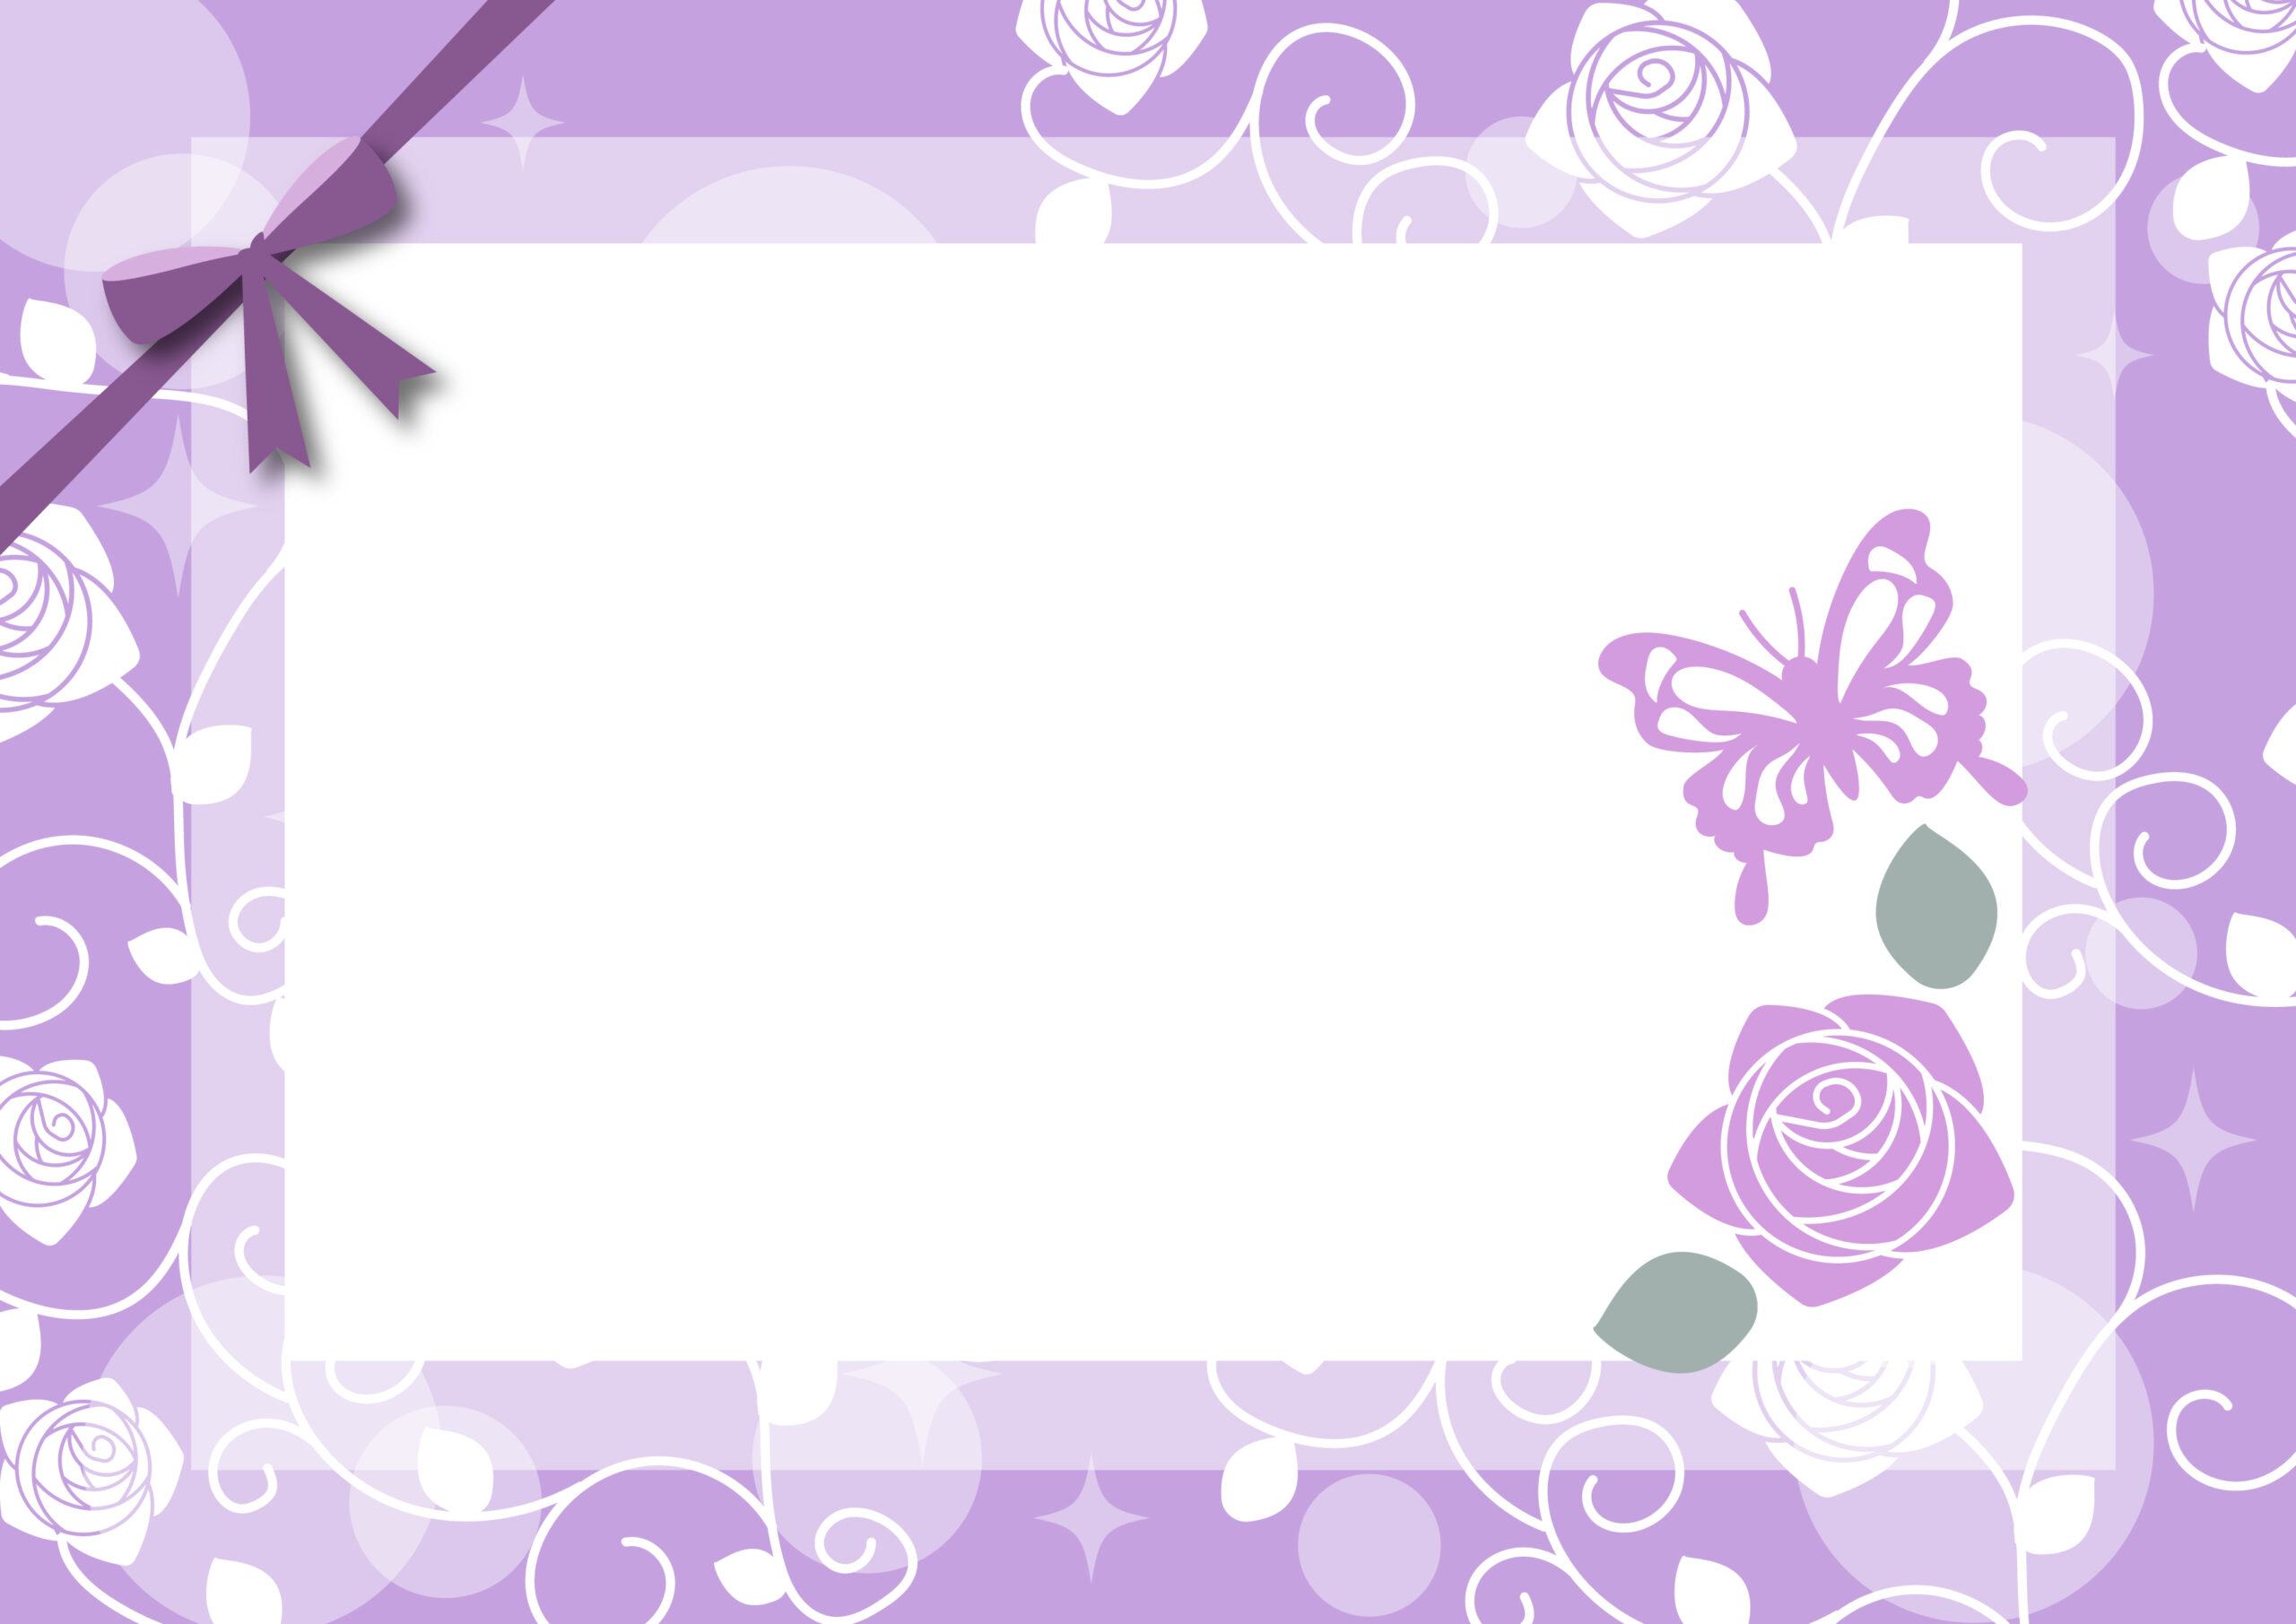 おしゃれなメッセージカードが手作りできるかわいいフレーム素材！印刷して手書き作成も可能なリボン付きのイラストになり、綺麗なバラの花と蝶々のデザインとなっております。誕生日や結婚のお祝いなどにご活用ください。ダウンロード：JPGA